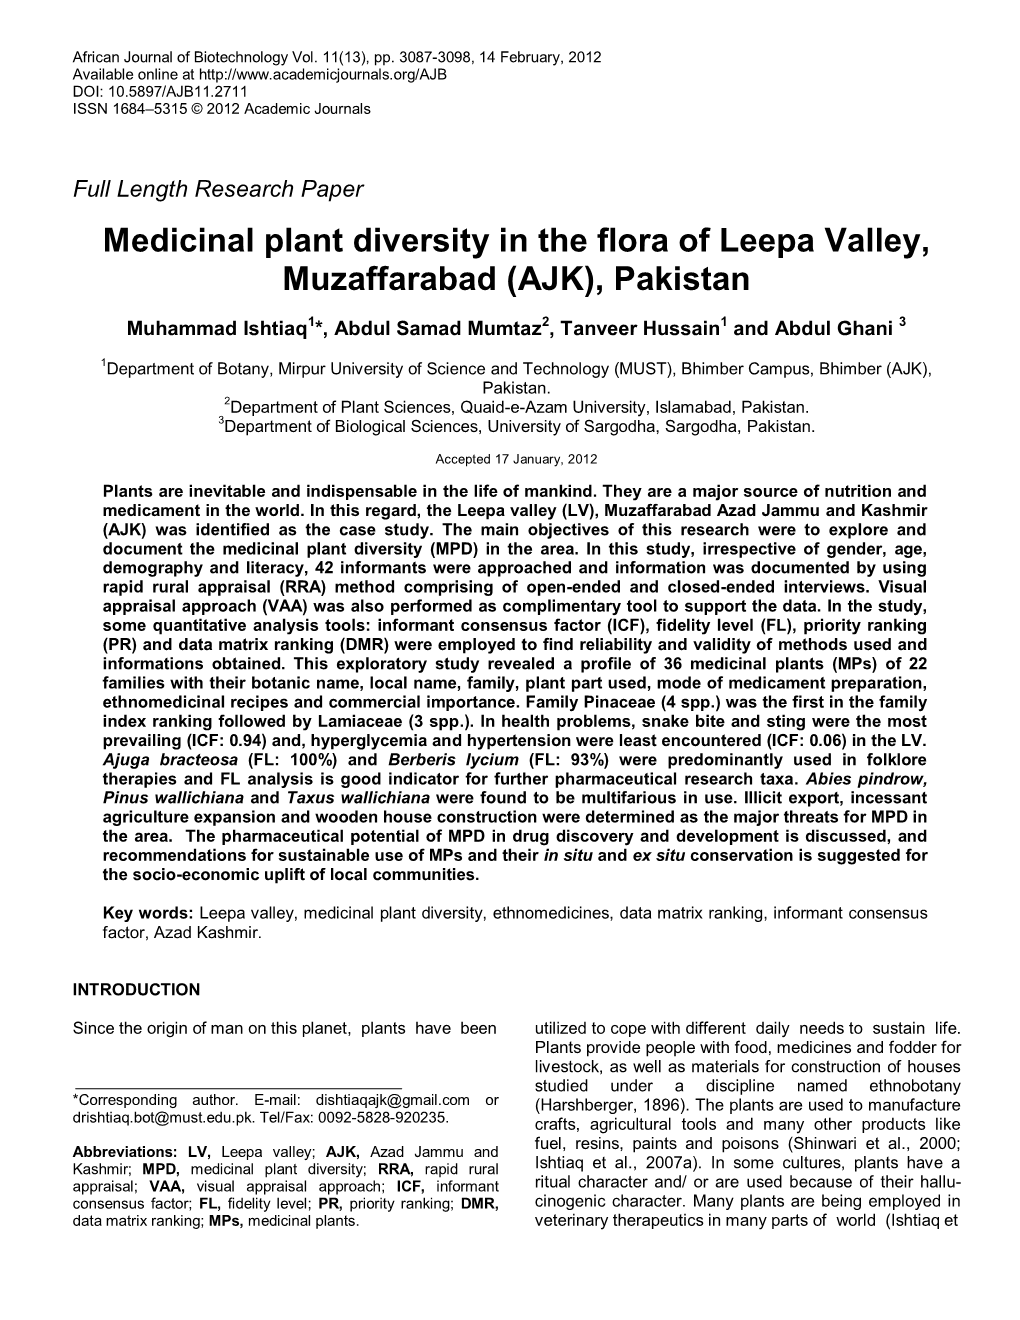 Ethnobotanical Survey of Leepa Valley